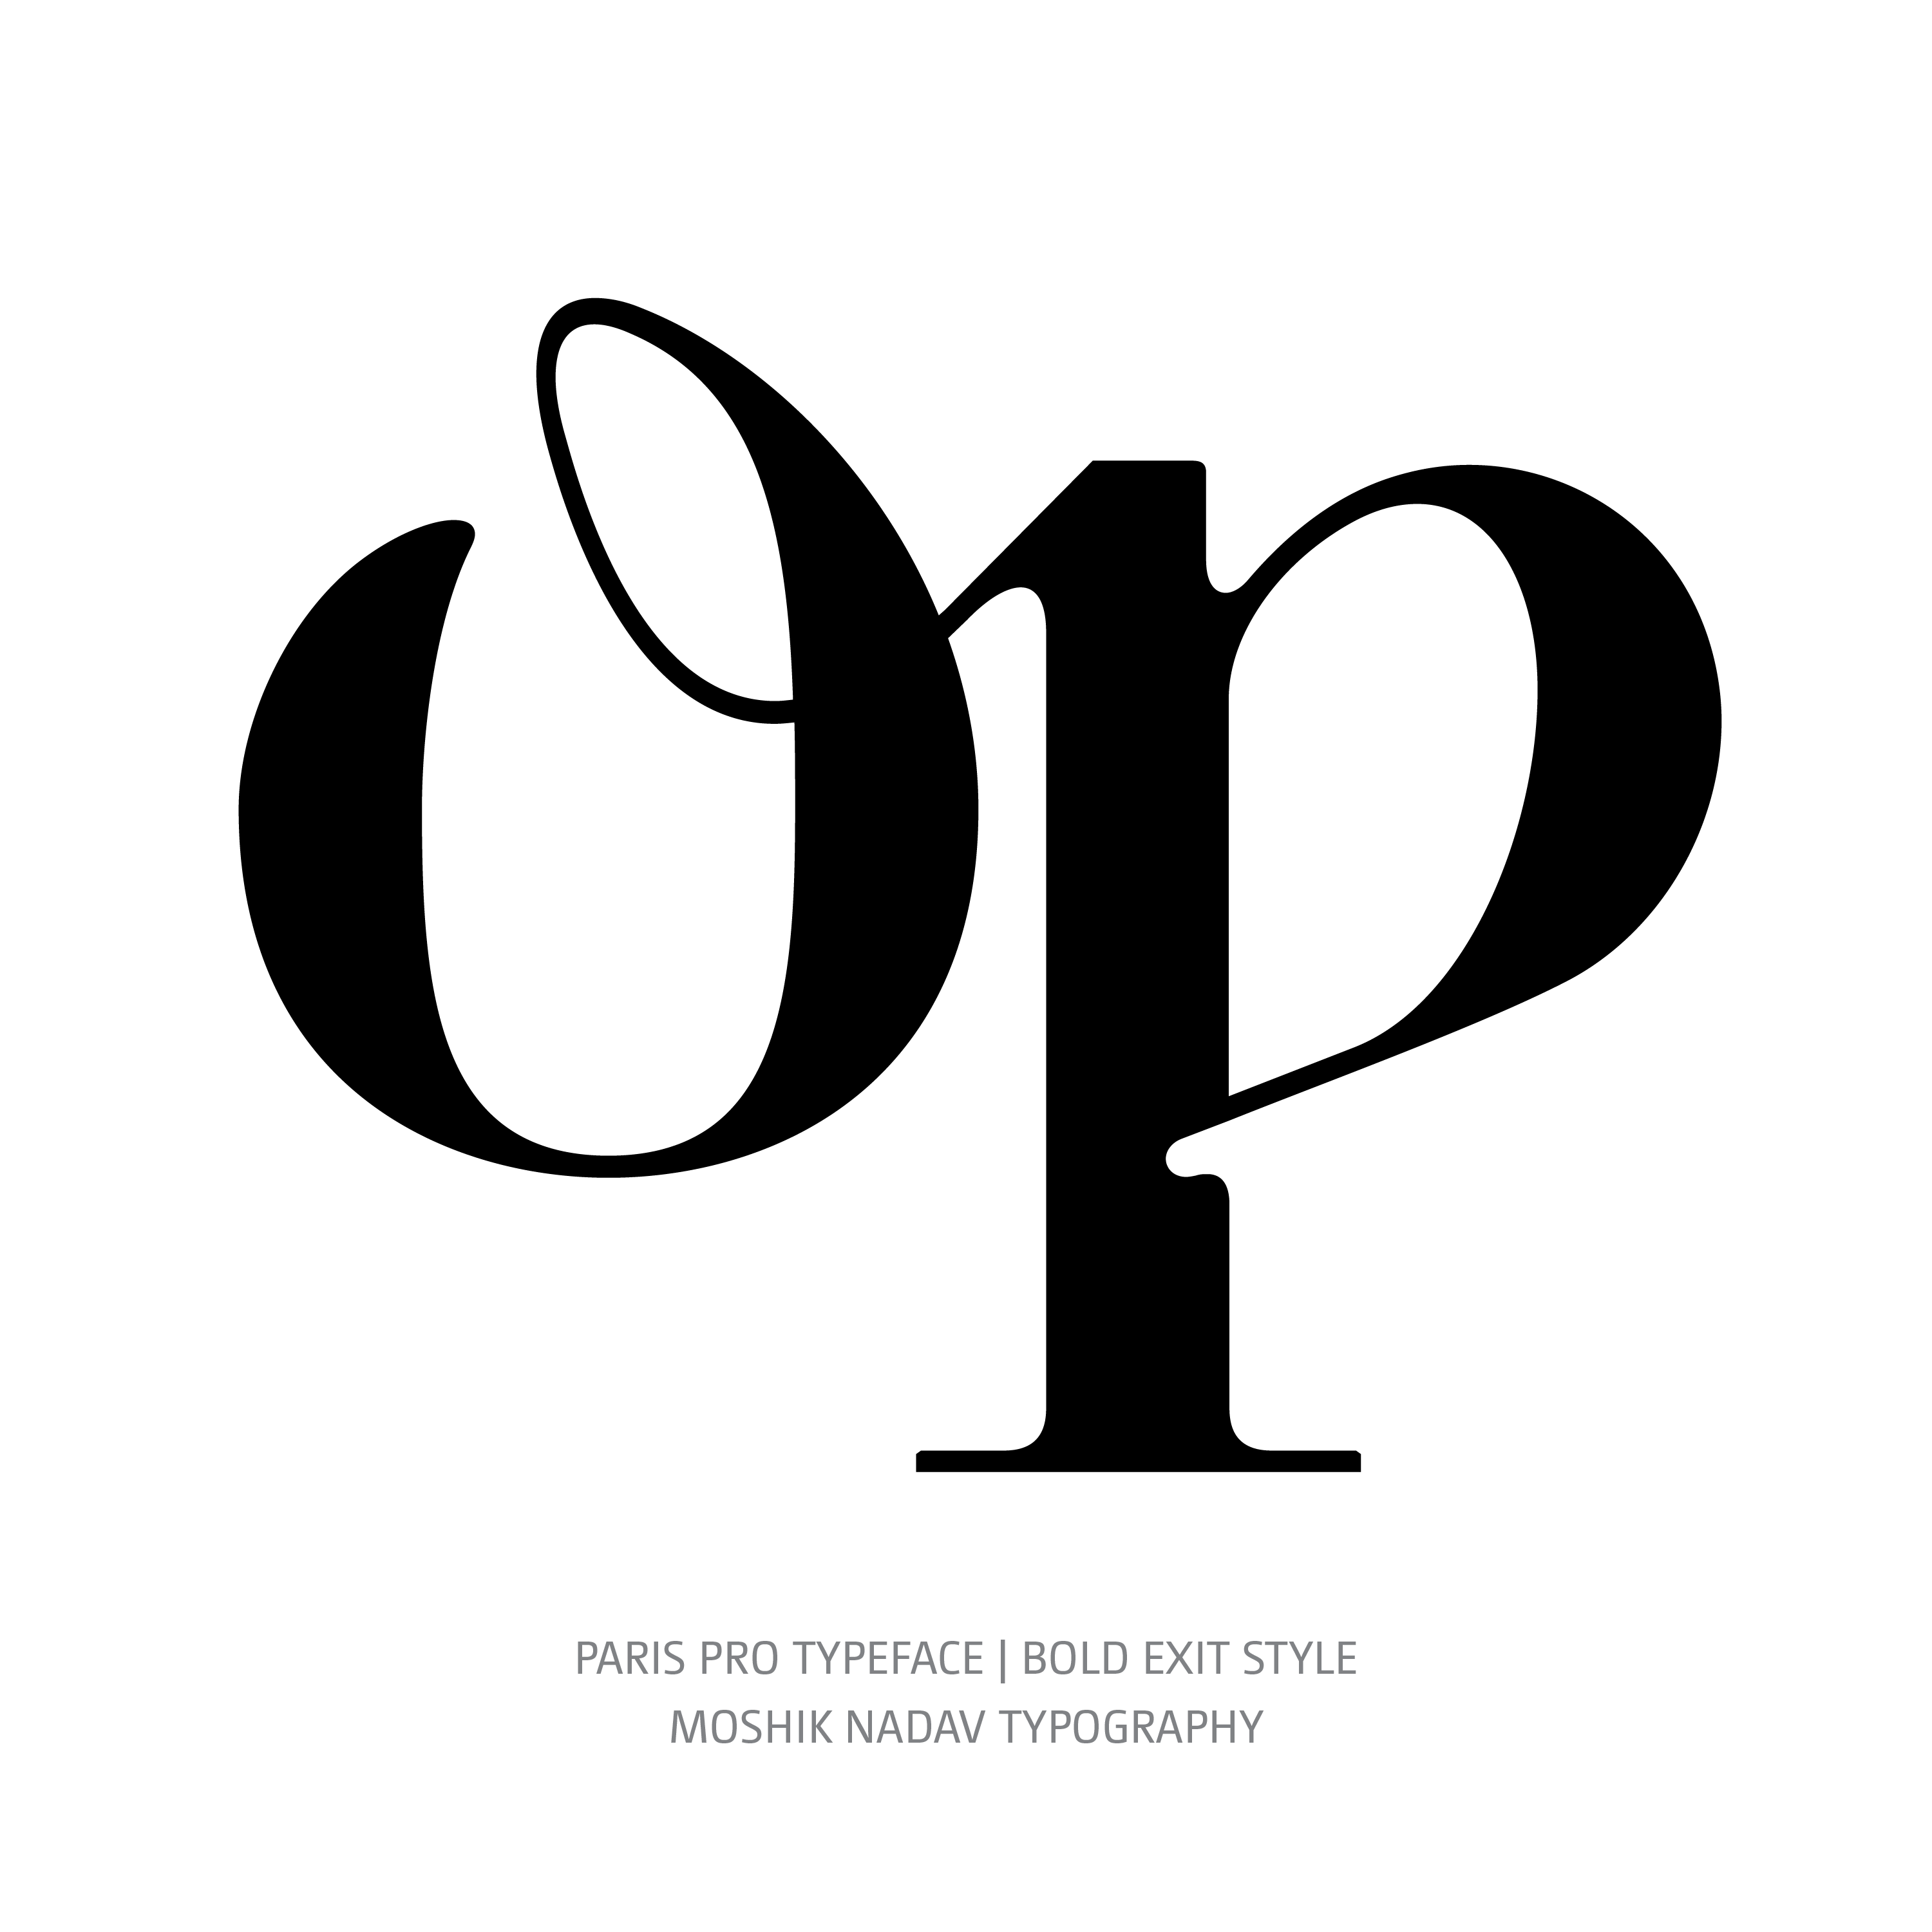 Paris Pro Typeface Bold Exit op ligature